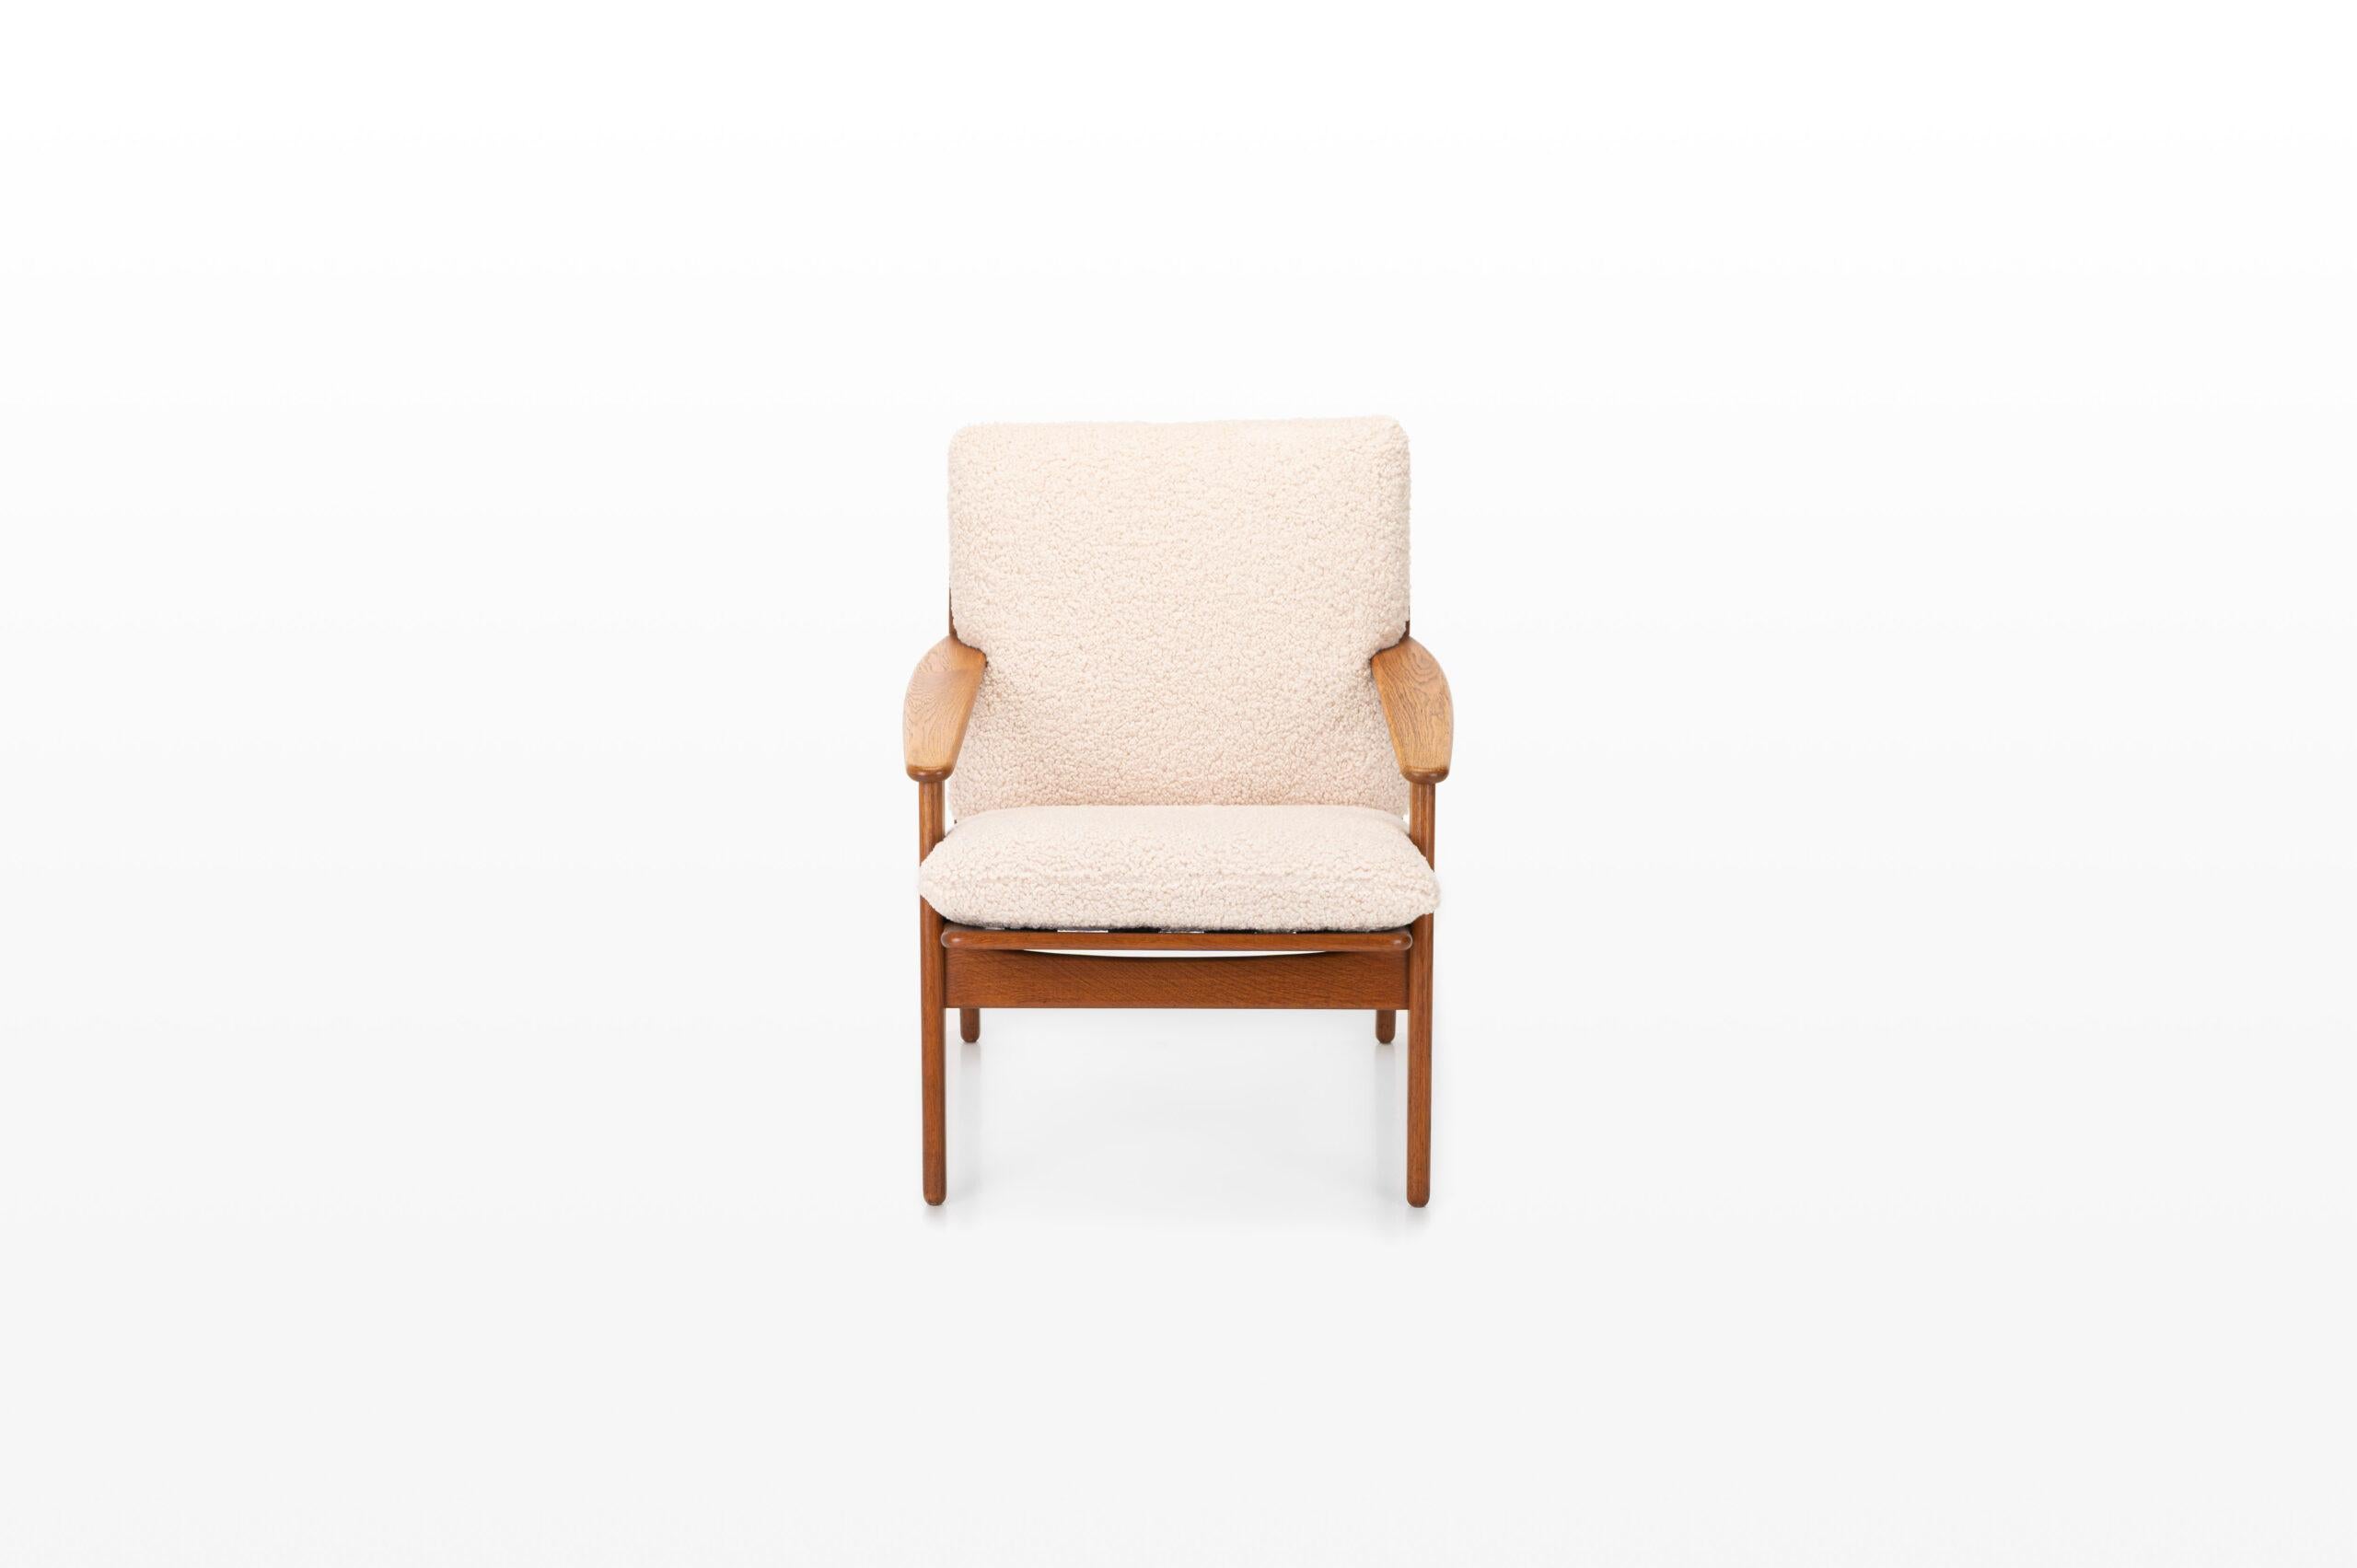 Sehr schöner Vintage-Sessel, entworfen von Poul Volther für FDB Mobler, Dänemark 1960er Jahre. Die Kissen sind mit einem bequemen Teddy-Stoff neu bezogen worden.
 